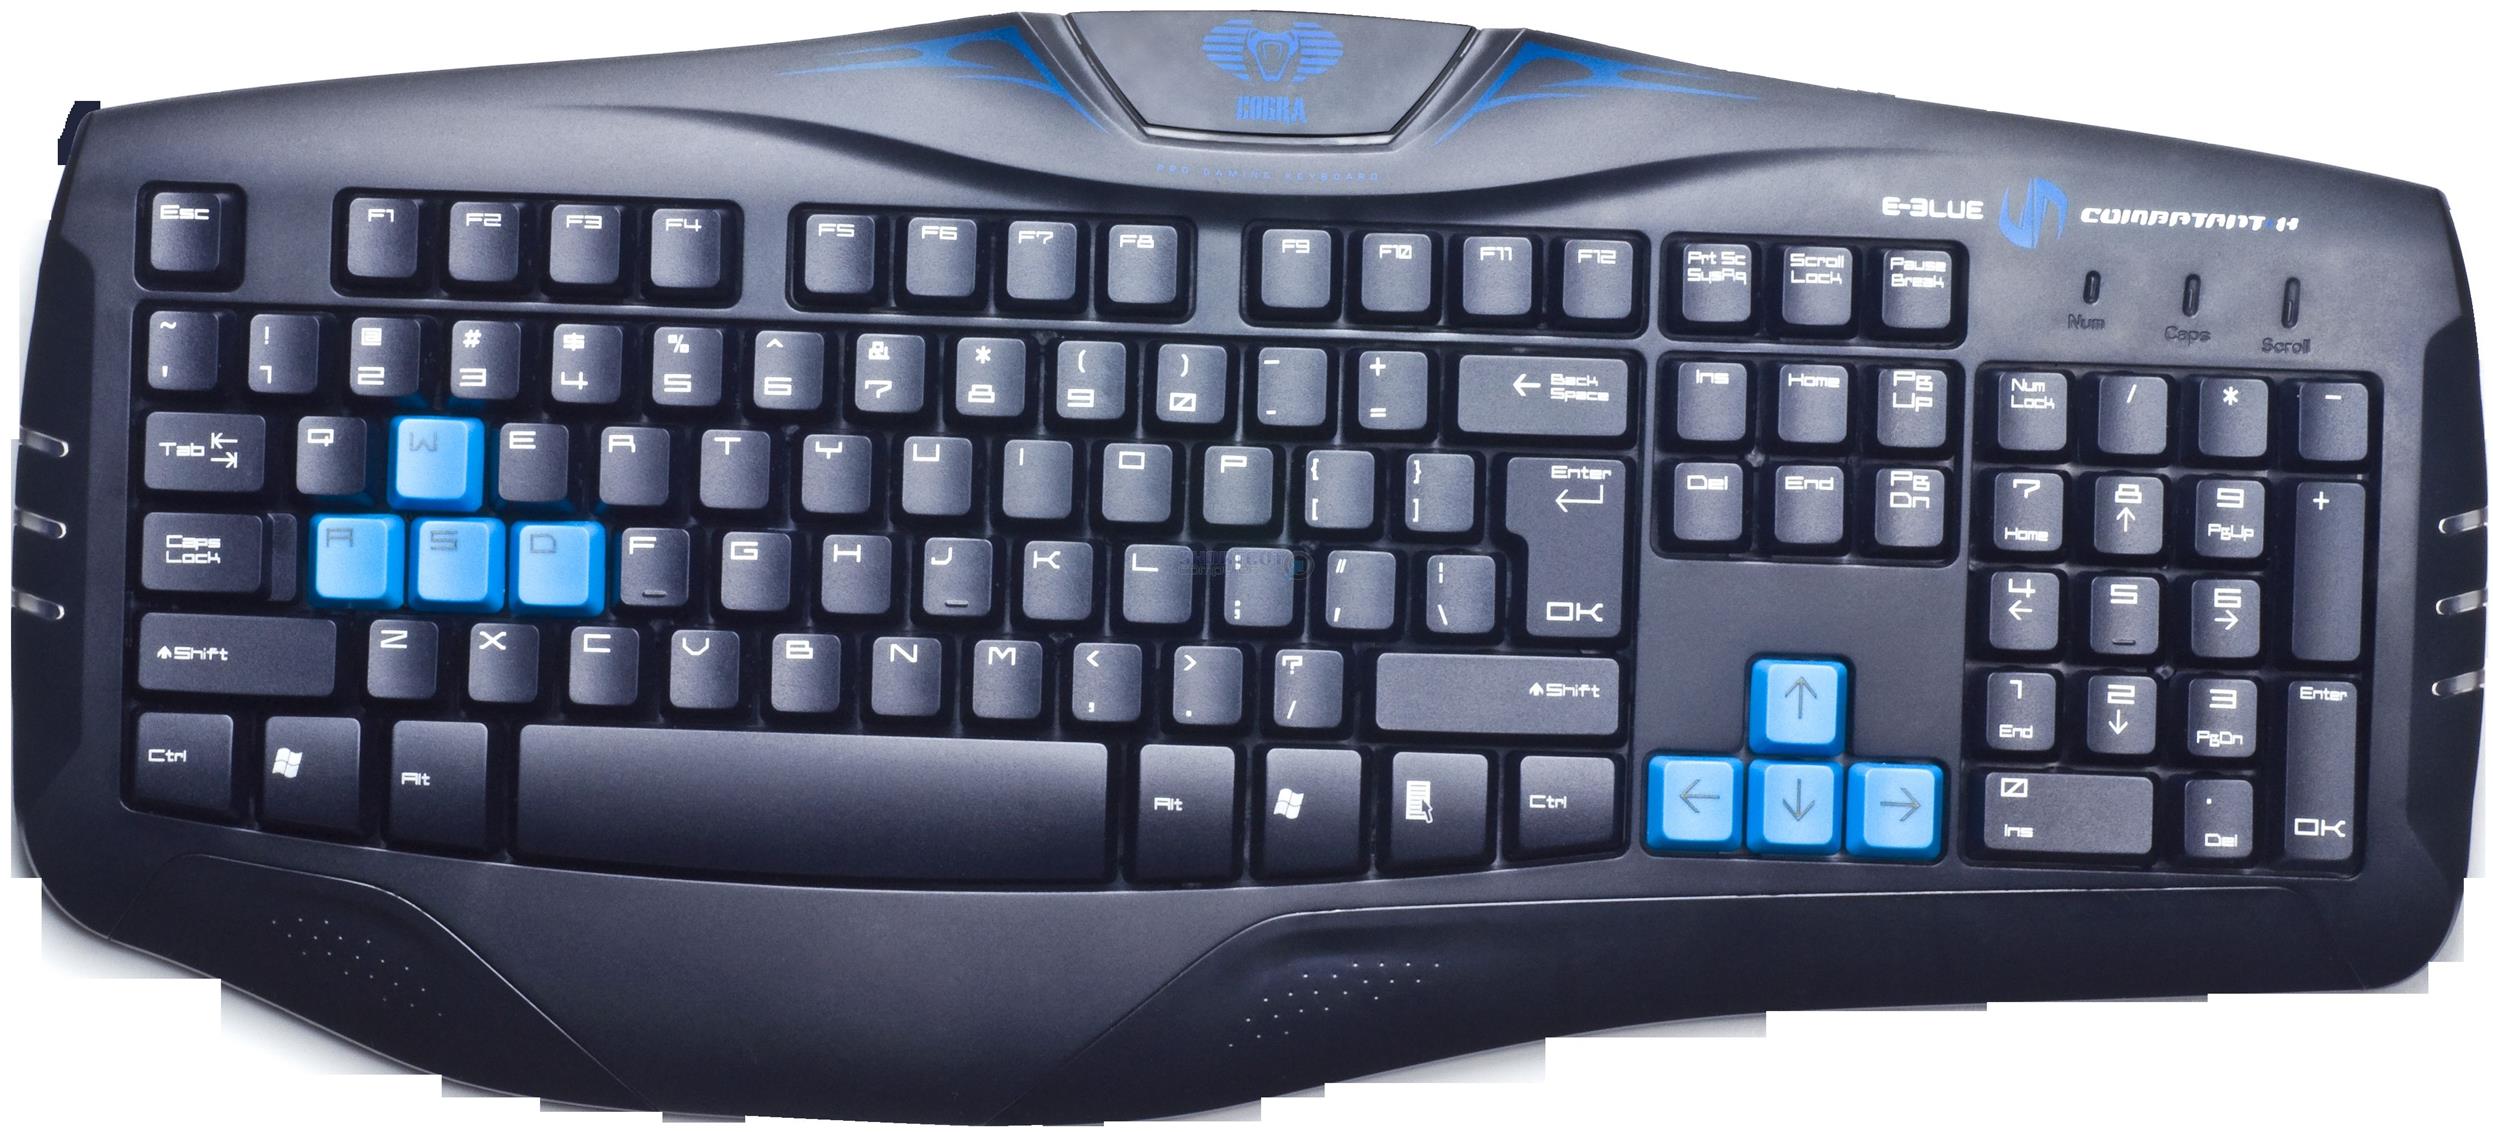 Eblue Keyboard Software